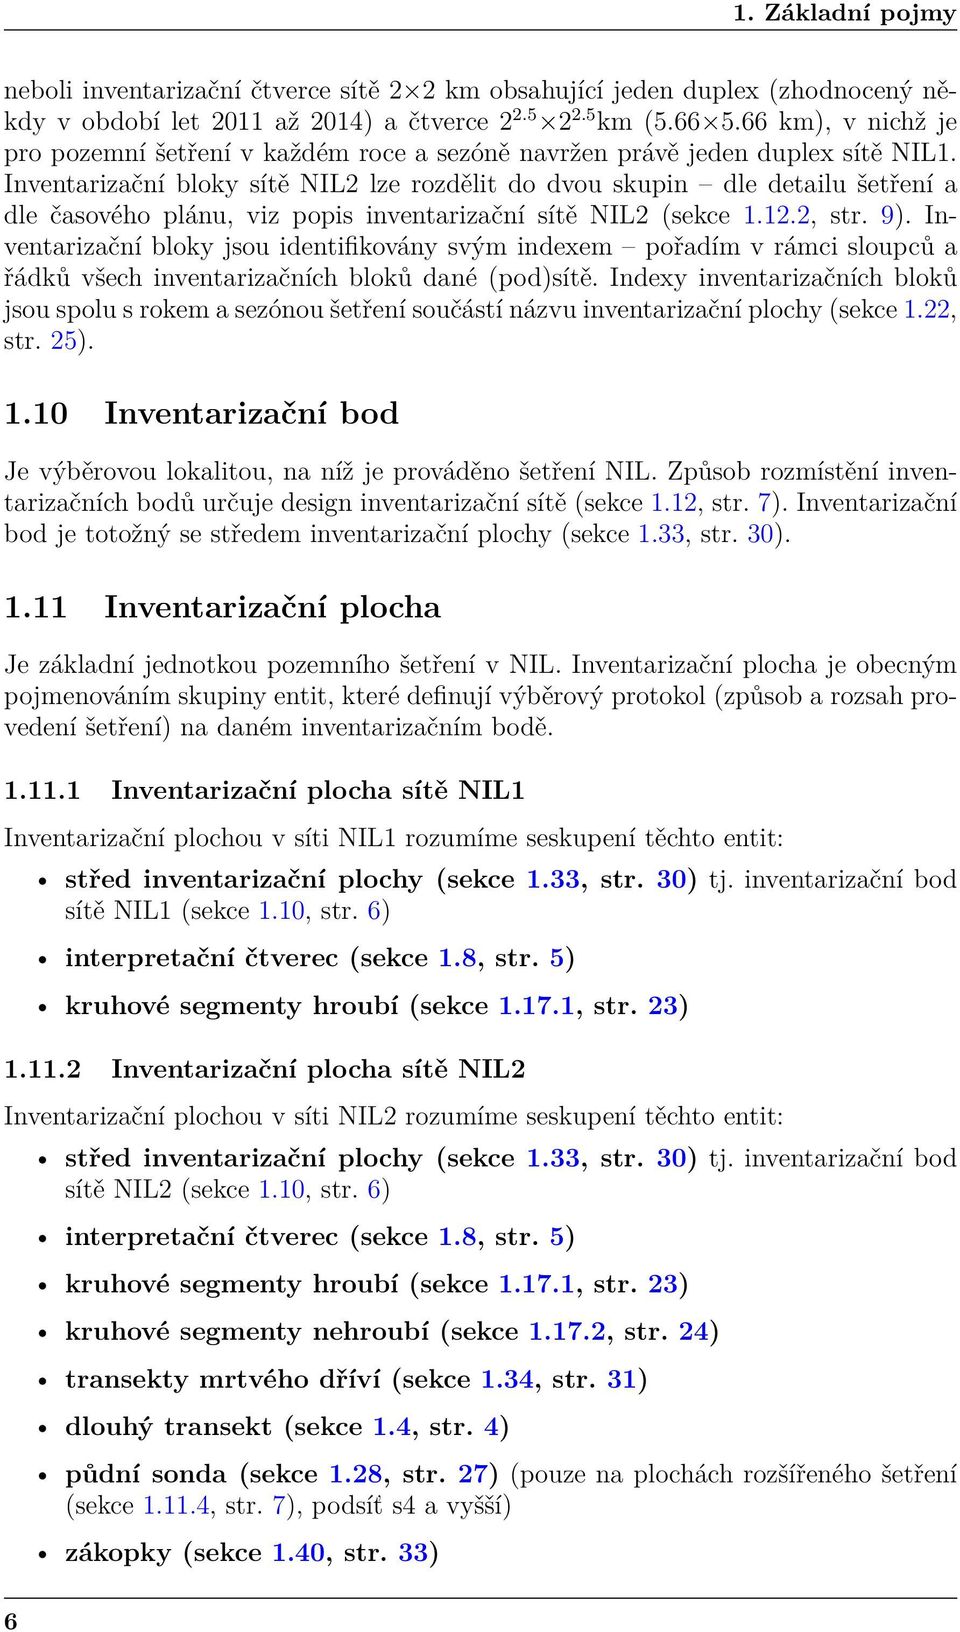 Inventarizační bloky sítě NIL2 lze rozdělit do dvou skupin dle detailu šetření a dle časového plánu, viz popis inventarizační sítě NIL2 (sekce 1.12.2, str. 9).